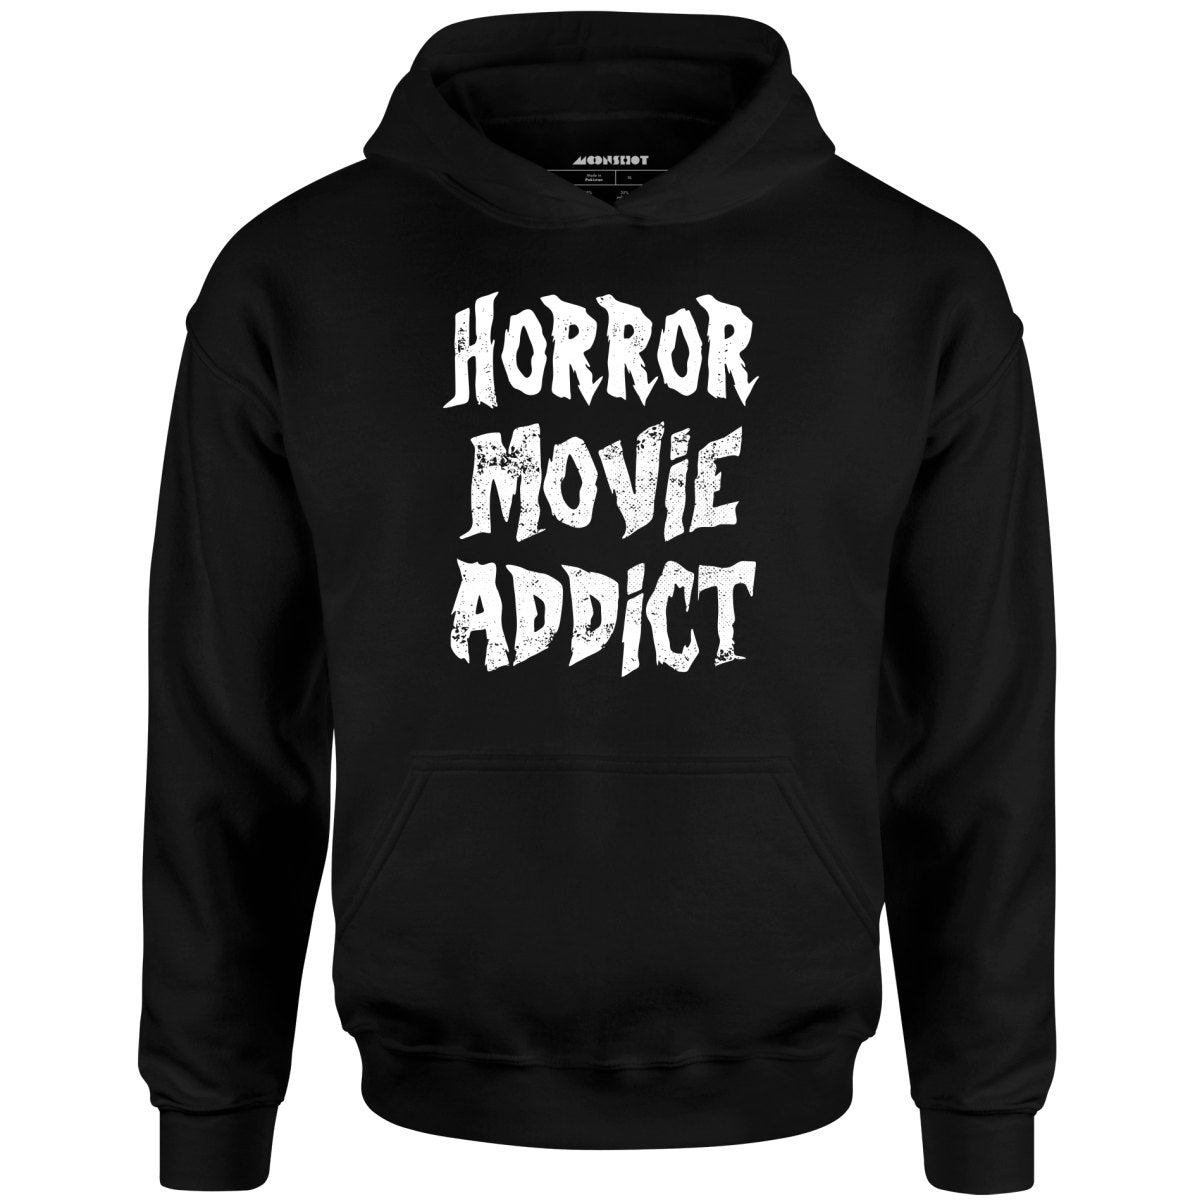 Horror Movie Addict - Unisex Hoodie